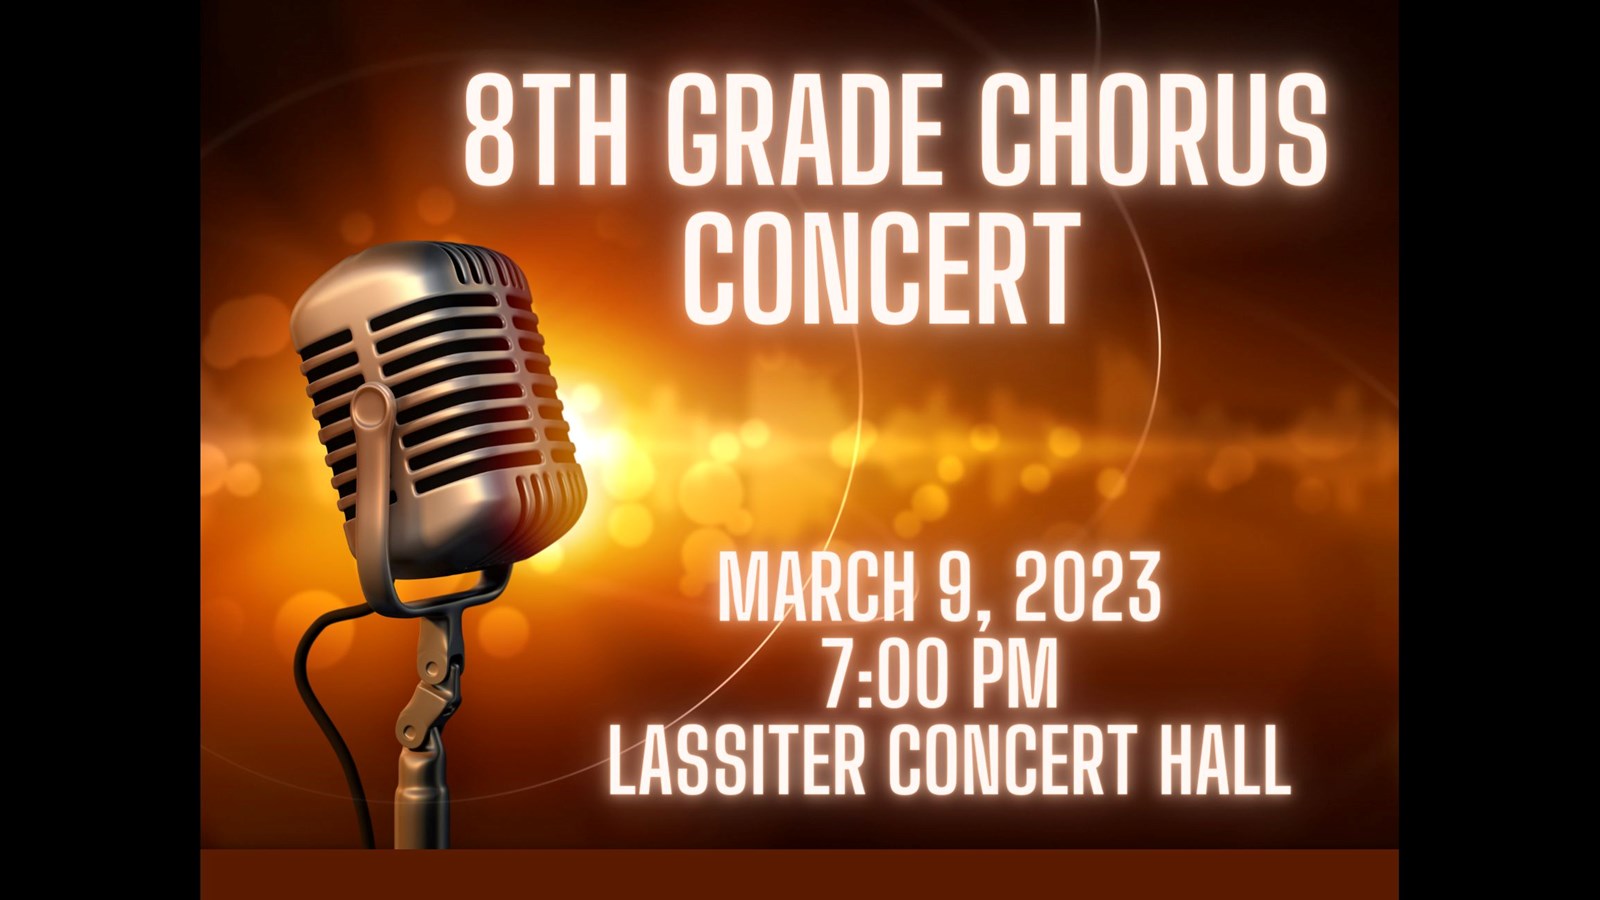 8th grade chorus concert